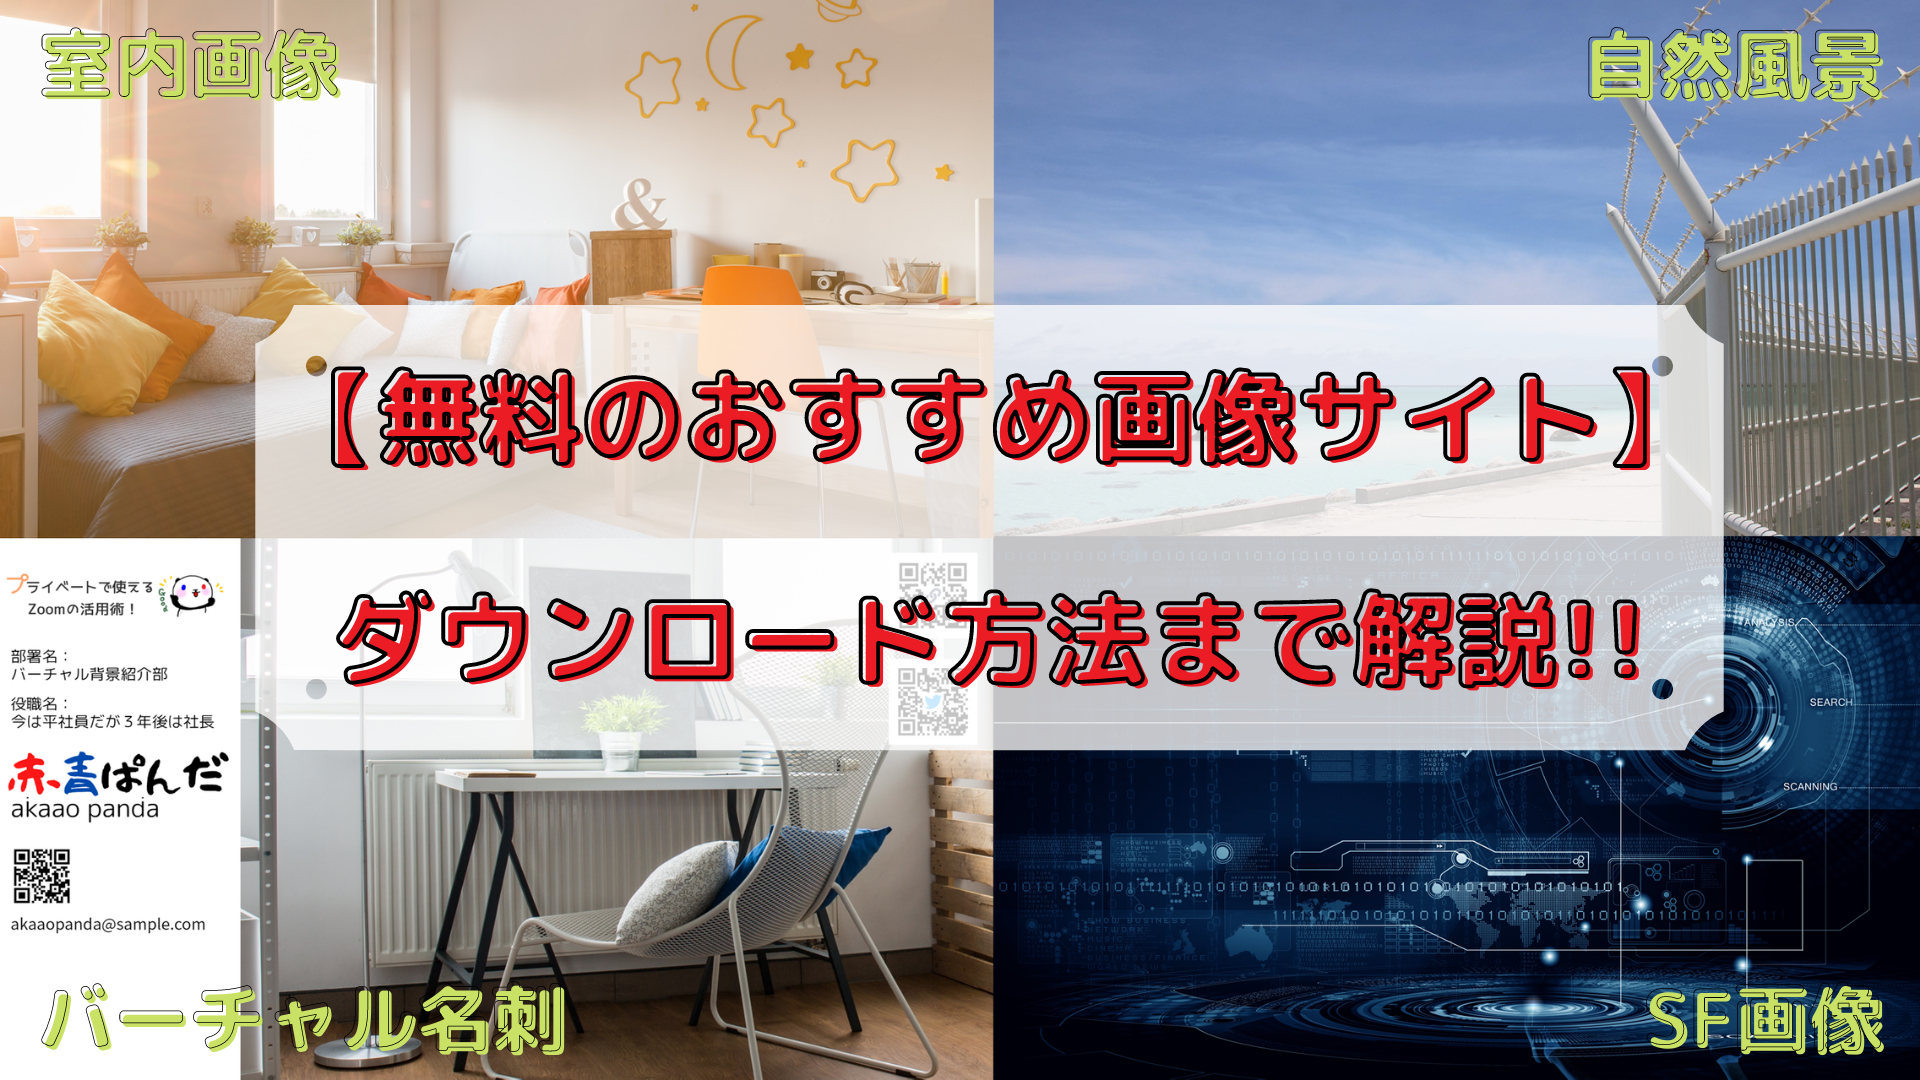 無料で使える Zoomのバーチャル背景 50選をお届けします！ - Shutterstock Blog 日本語